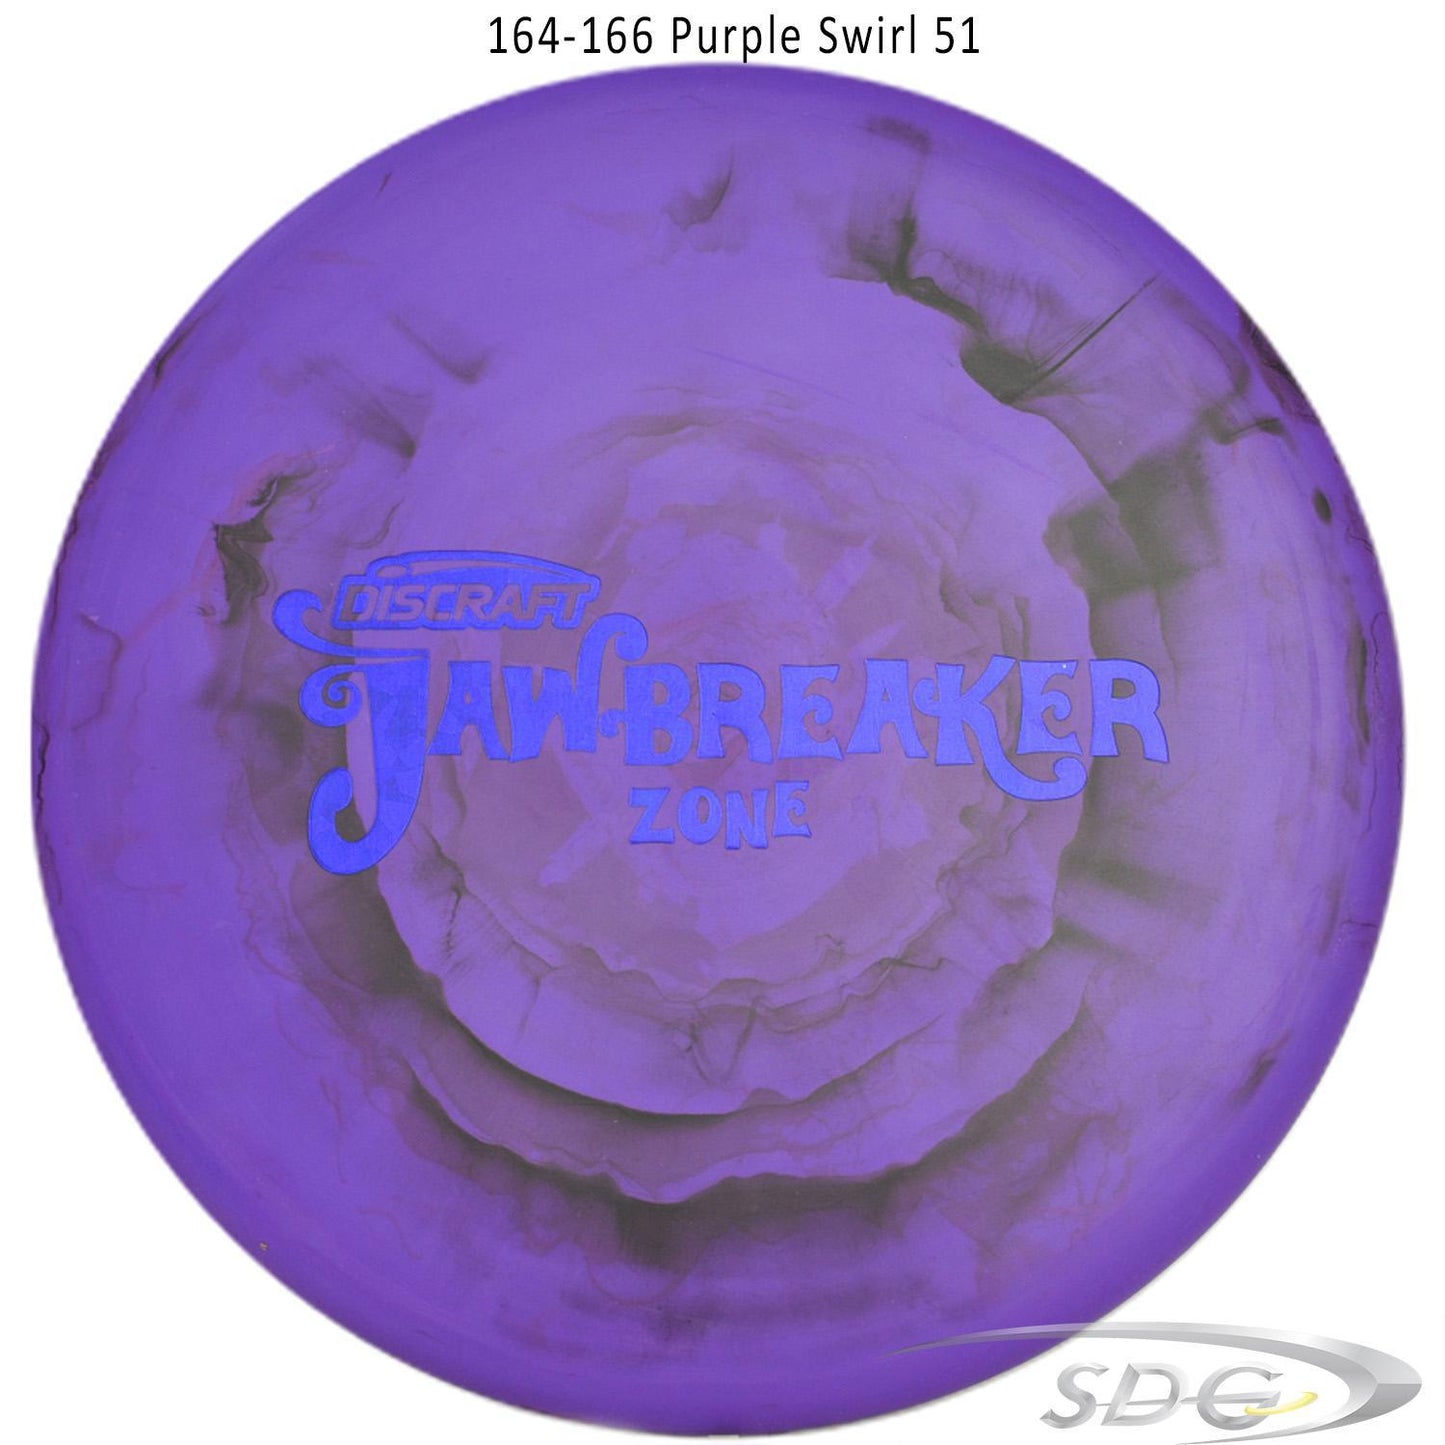 discraft-jawbreaker-zone-disc-golf-putter 164-166 Purple Swirl 51